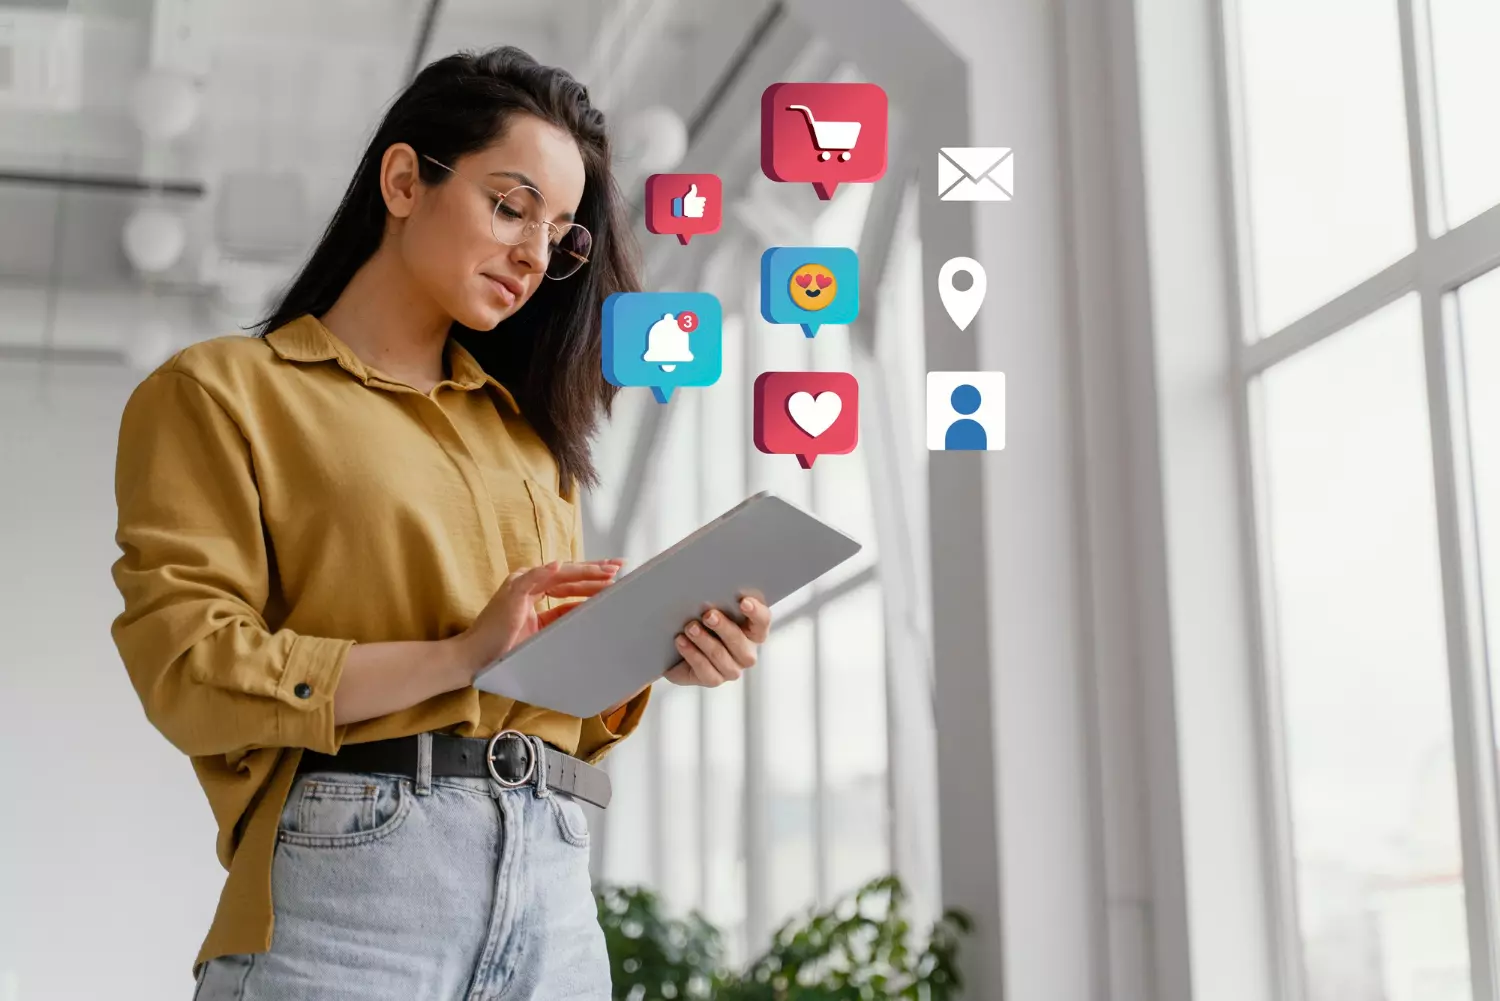 Marketing de Conteúdo - Mulher com Tablet nas mãos e simbolos referente as redes sociais.